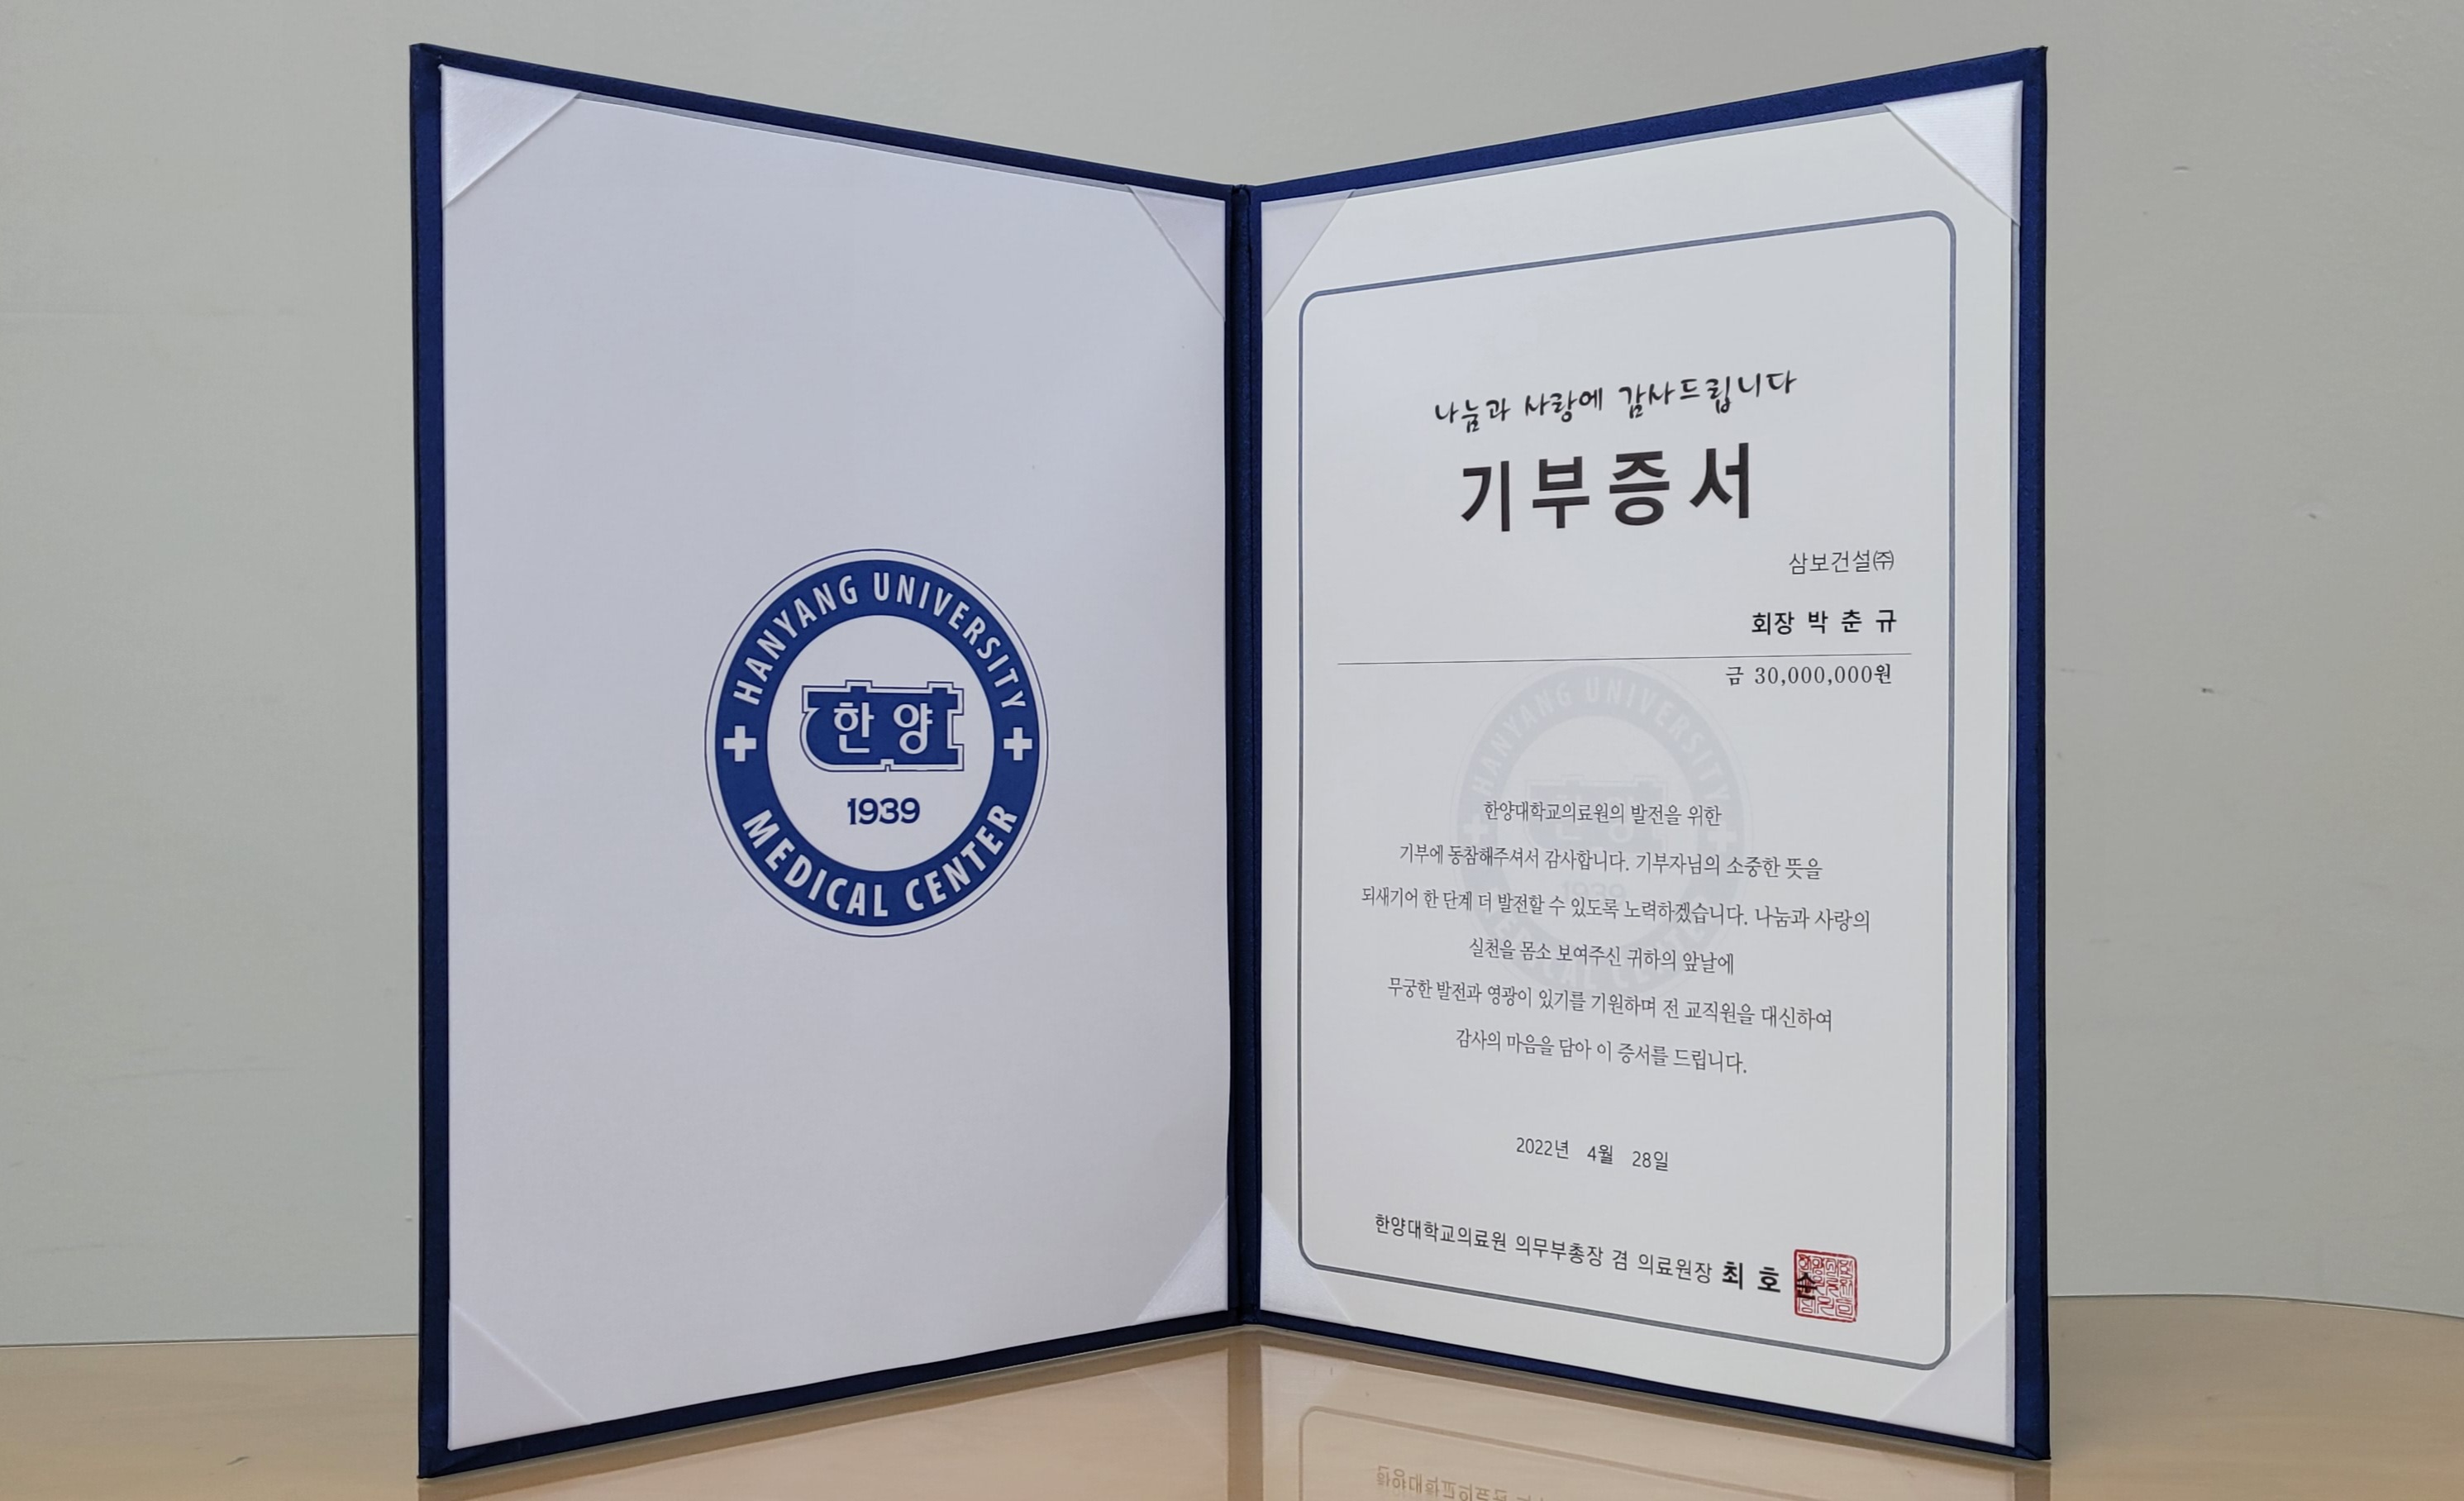 한양대학교병원 신축기금으로 삼보건설(주) 박춘규 회장 3천만 원 기부